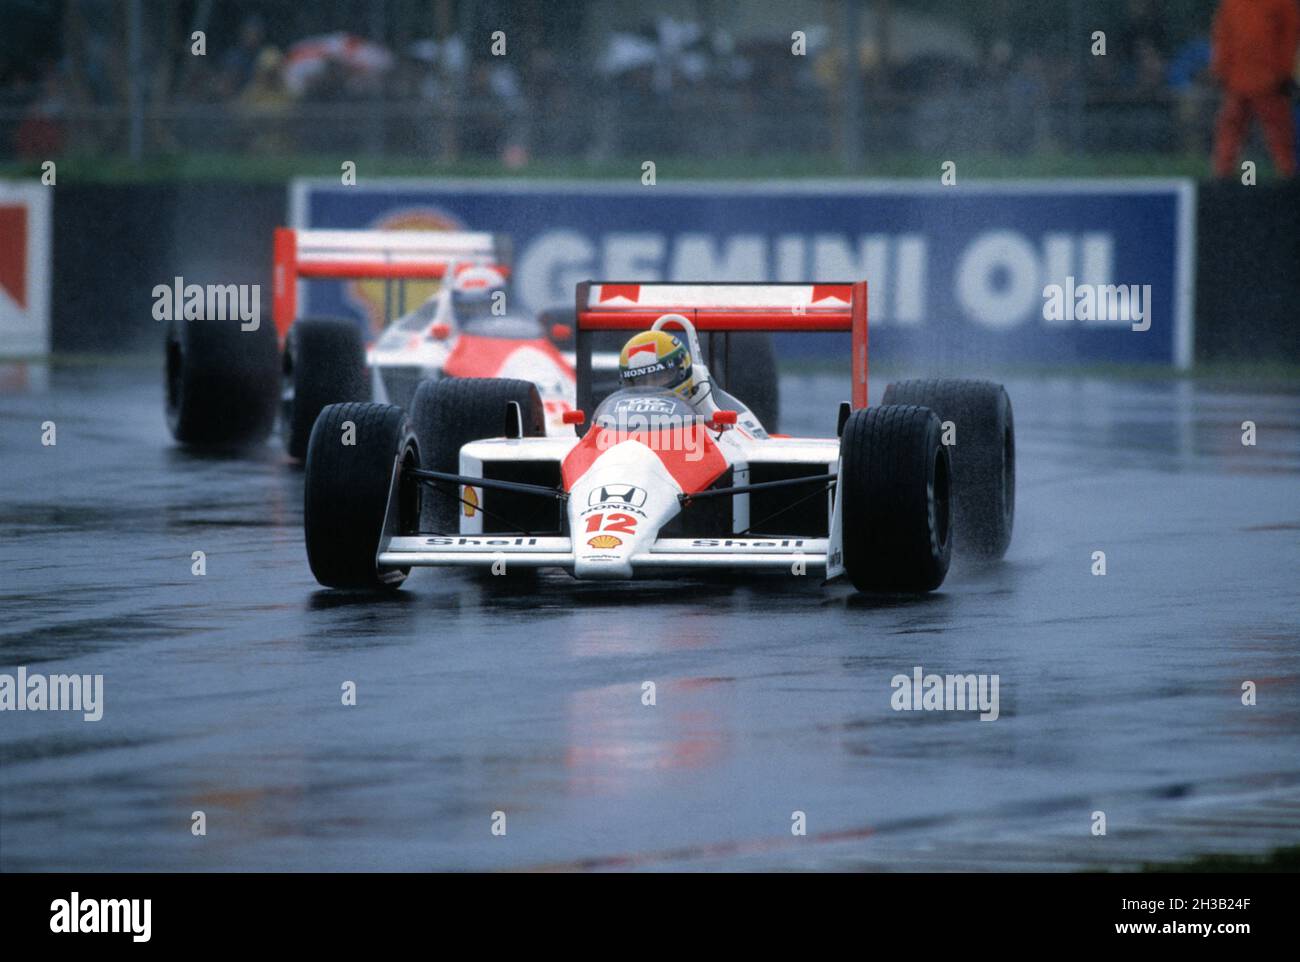 Reino Unido. Inglaterra. Silverstone. Carrera de Gran Premio de Motor británico. 1988. El piloto brasileño de Fórmula 1 Ayrton Senna (1960 - 1994) conduce el McLaren M. Foto de stock